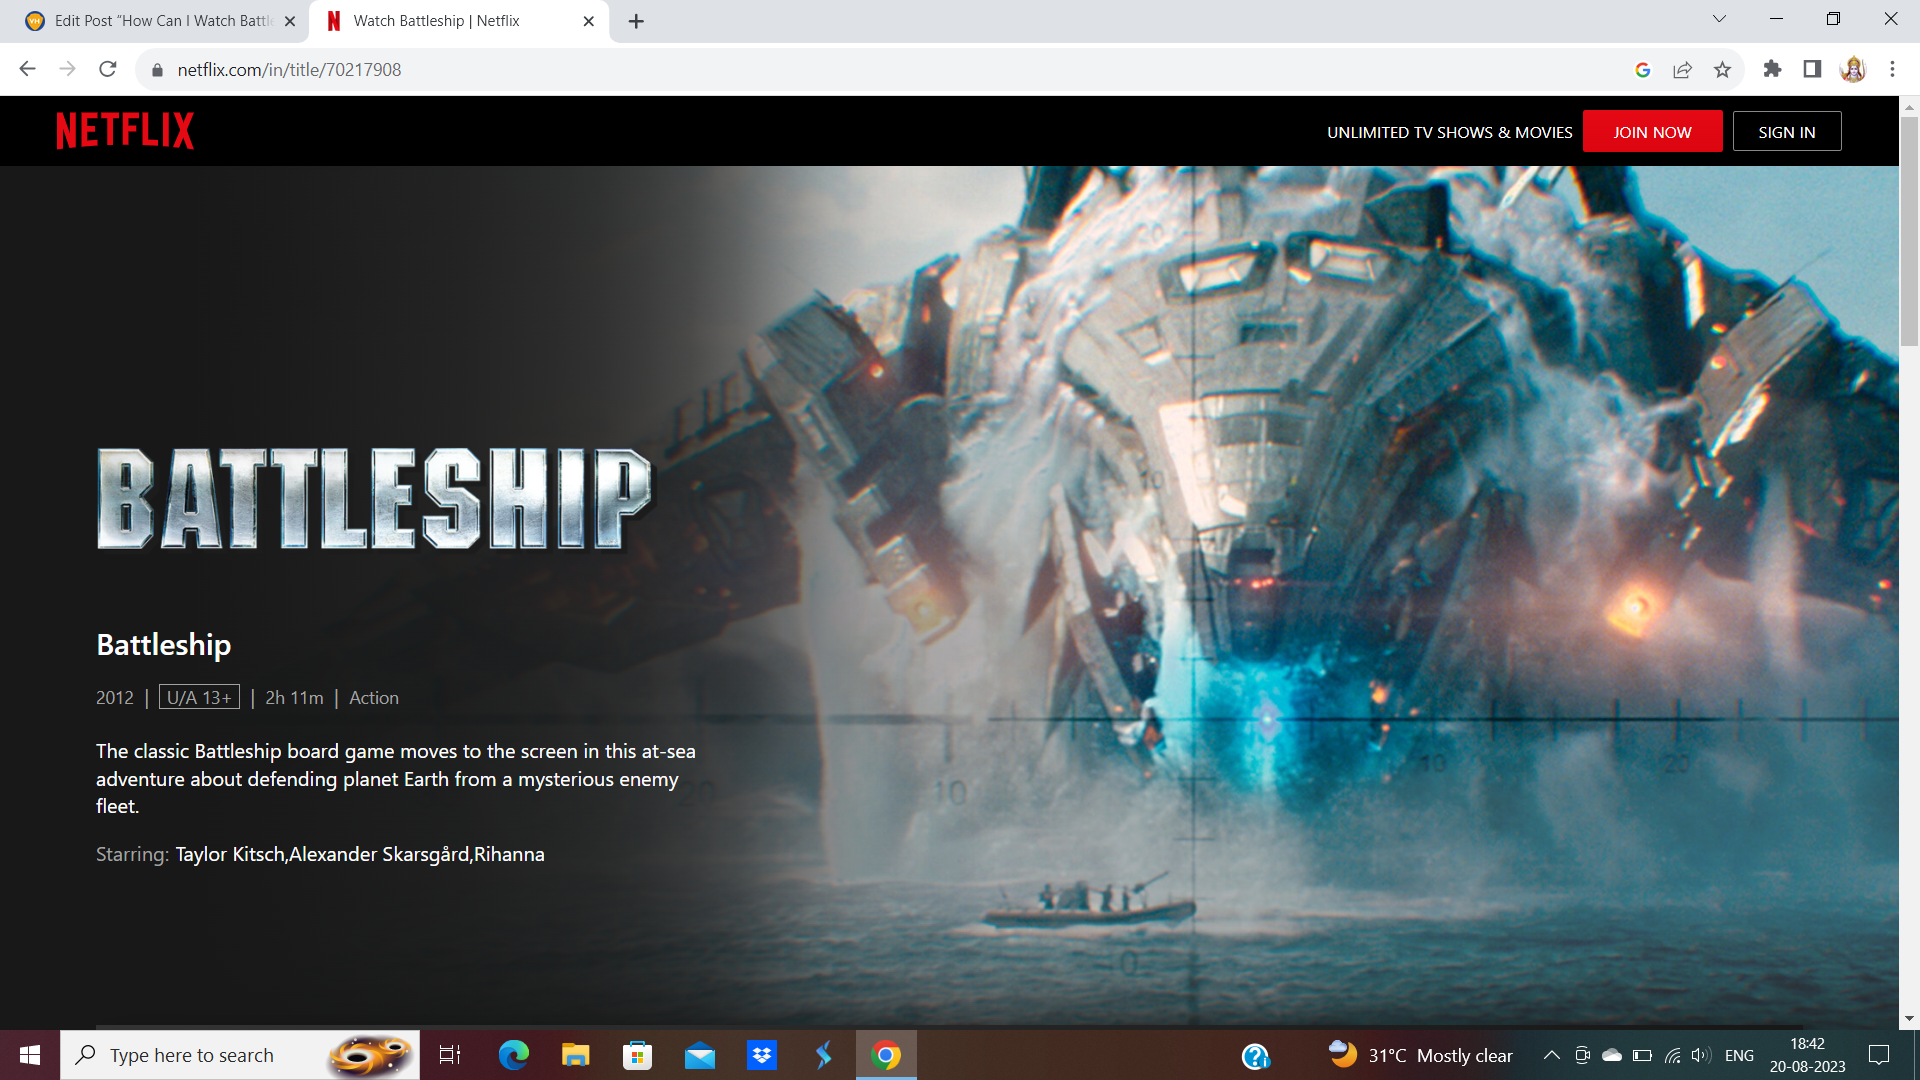 Watch Battleship on Netflix